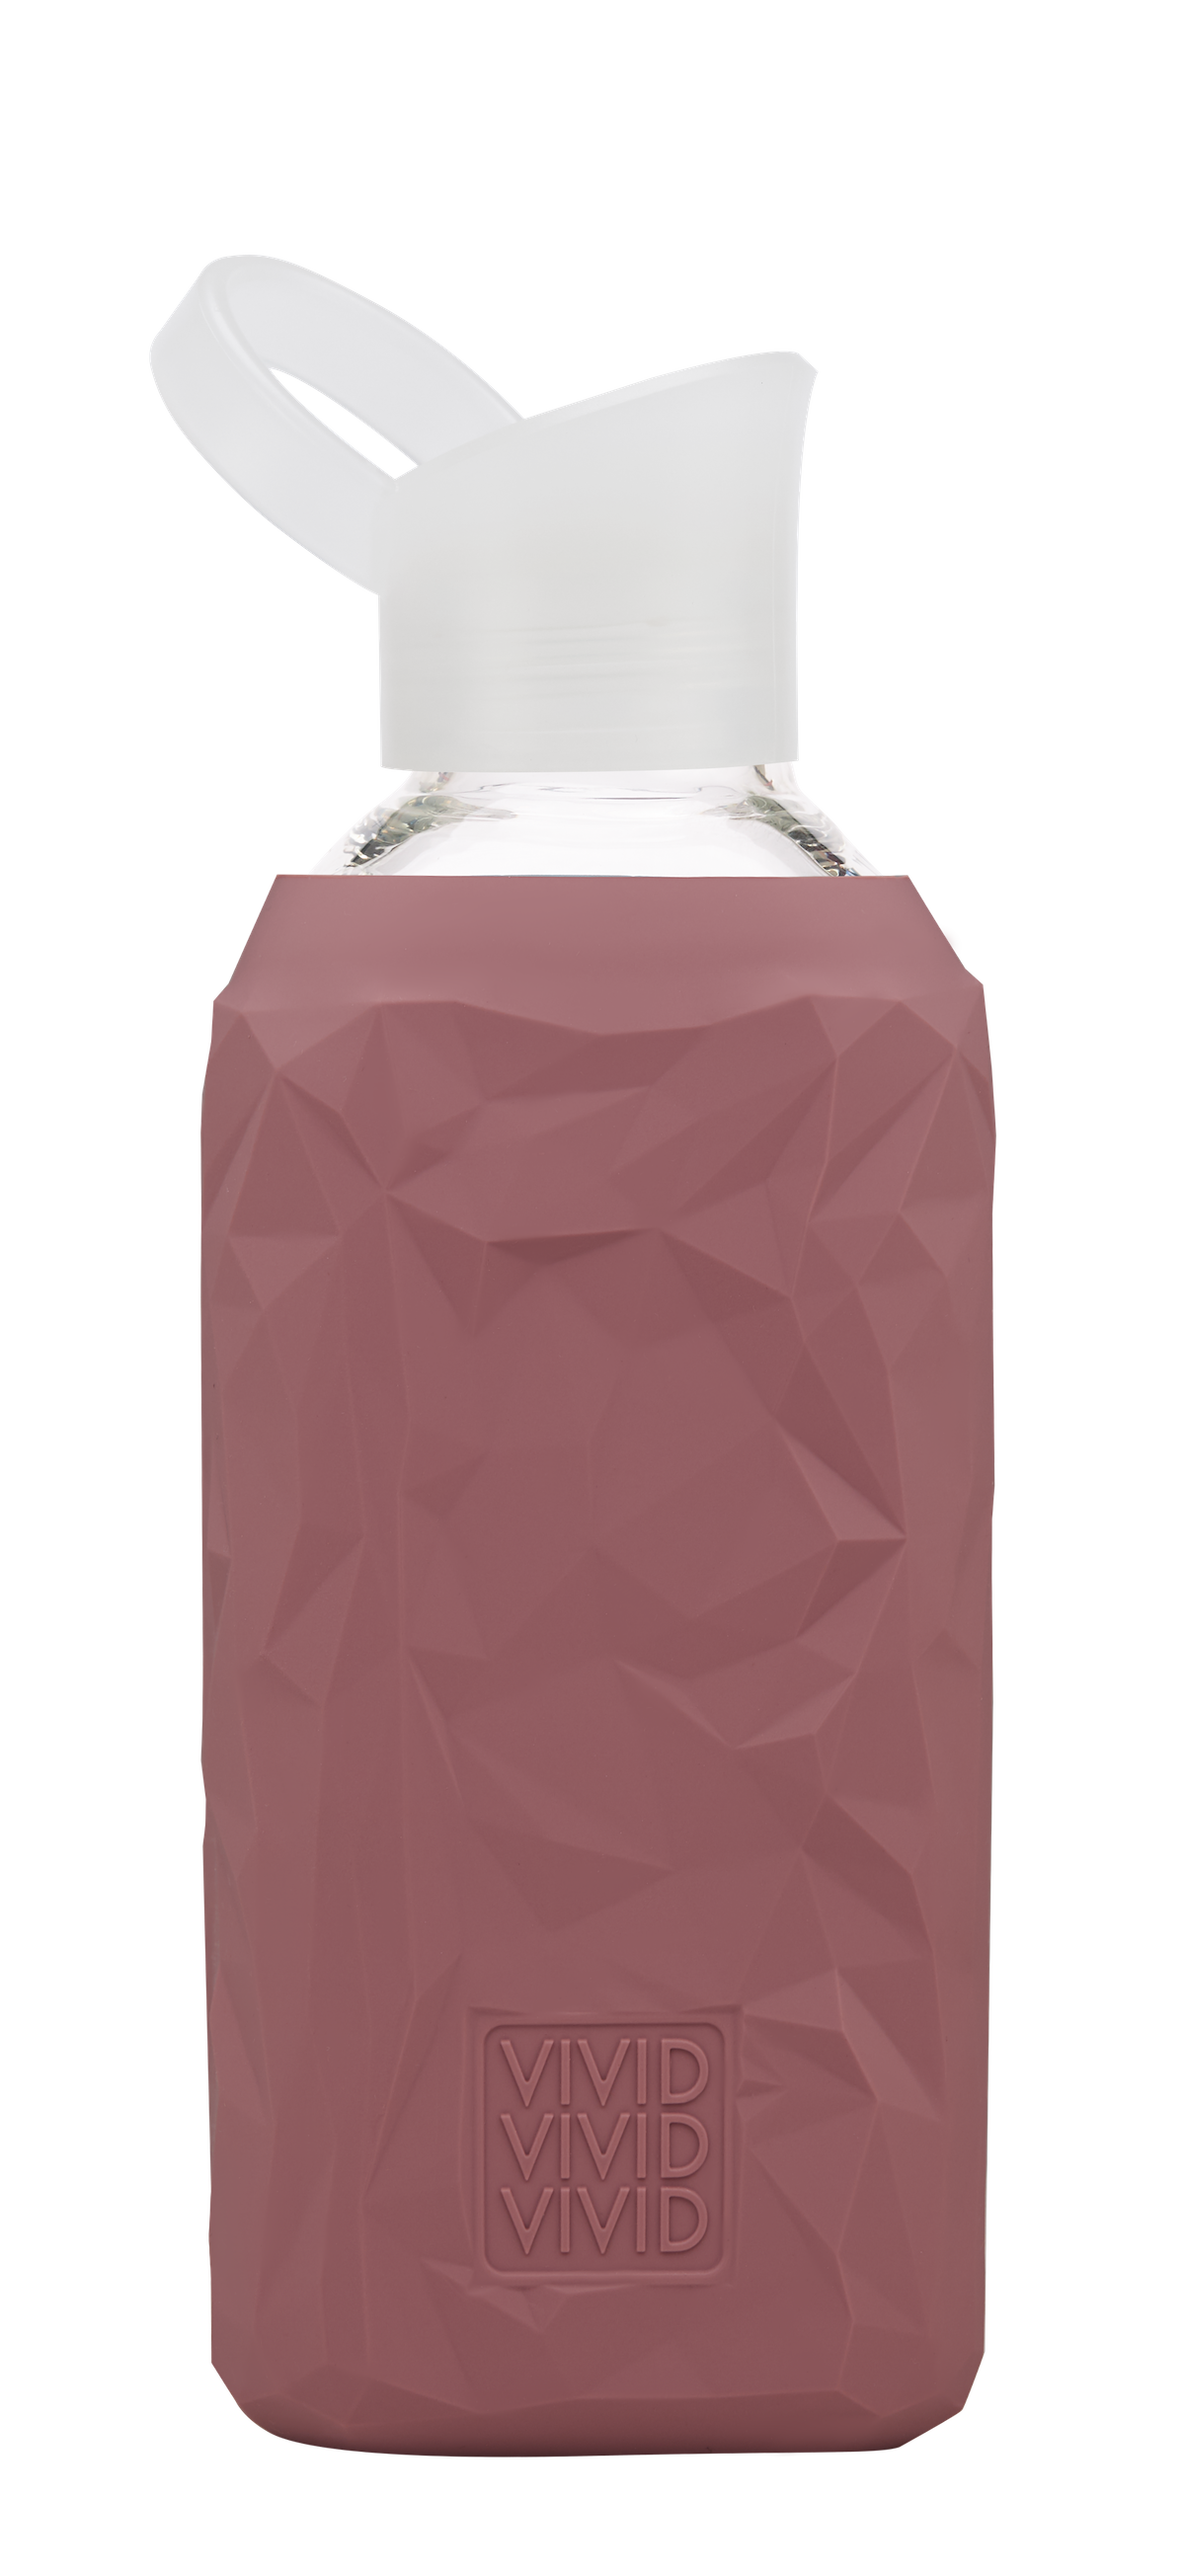 beVIVID Trinkflasche aus Glas und kein Plastik, geschmacksneutral in Trend Farben, Bestseller in modischen Farben, für Kinder, Schule, Studium, Yoga, Sport, Büro, Dienstreisen, Trinken ist gesund, die Formel-1 für gesundes Leben, glatte Haut und Gesundheit, für kalte und warme Getränke und Tee, viel trinken ist das Beste für antiaging, Design Flaschen von beVIVID, Klimaschutz mit Glas Trinkflaschen, crushed design ist deutsches Design Alternativen Text bearbeiten  Alternativen Text bearbeiten